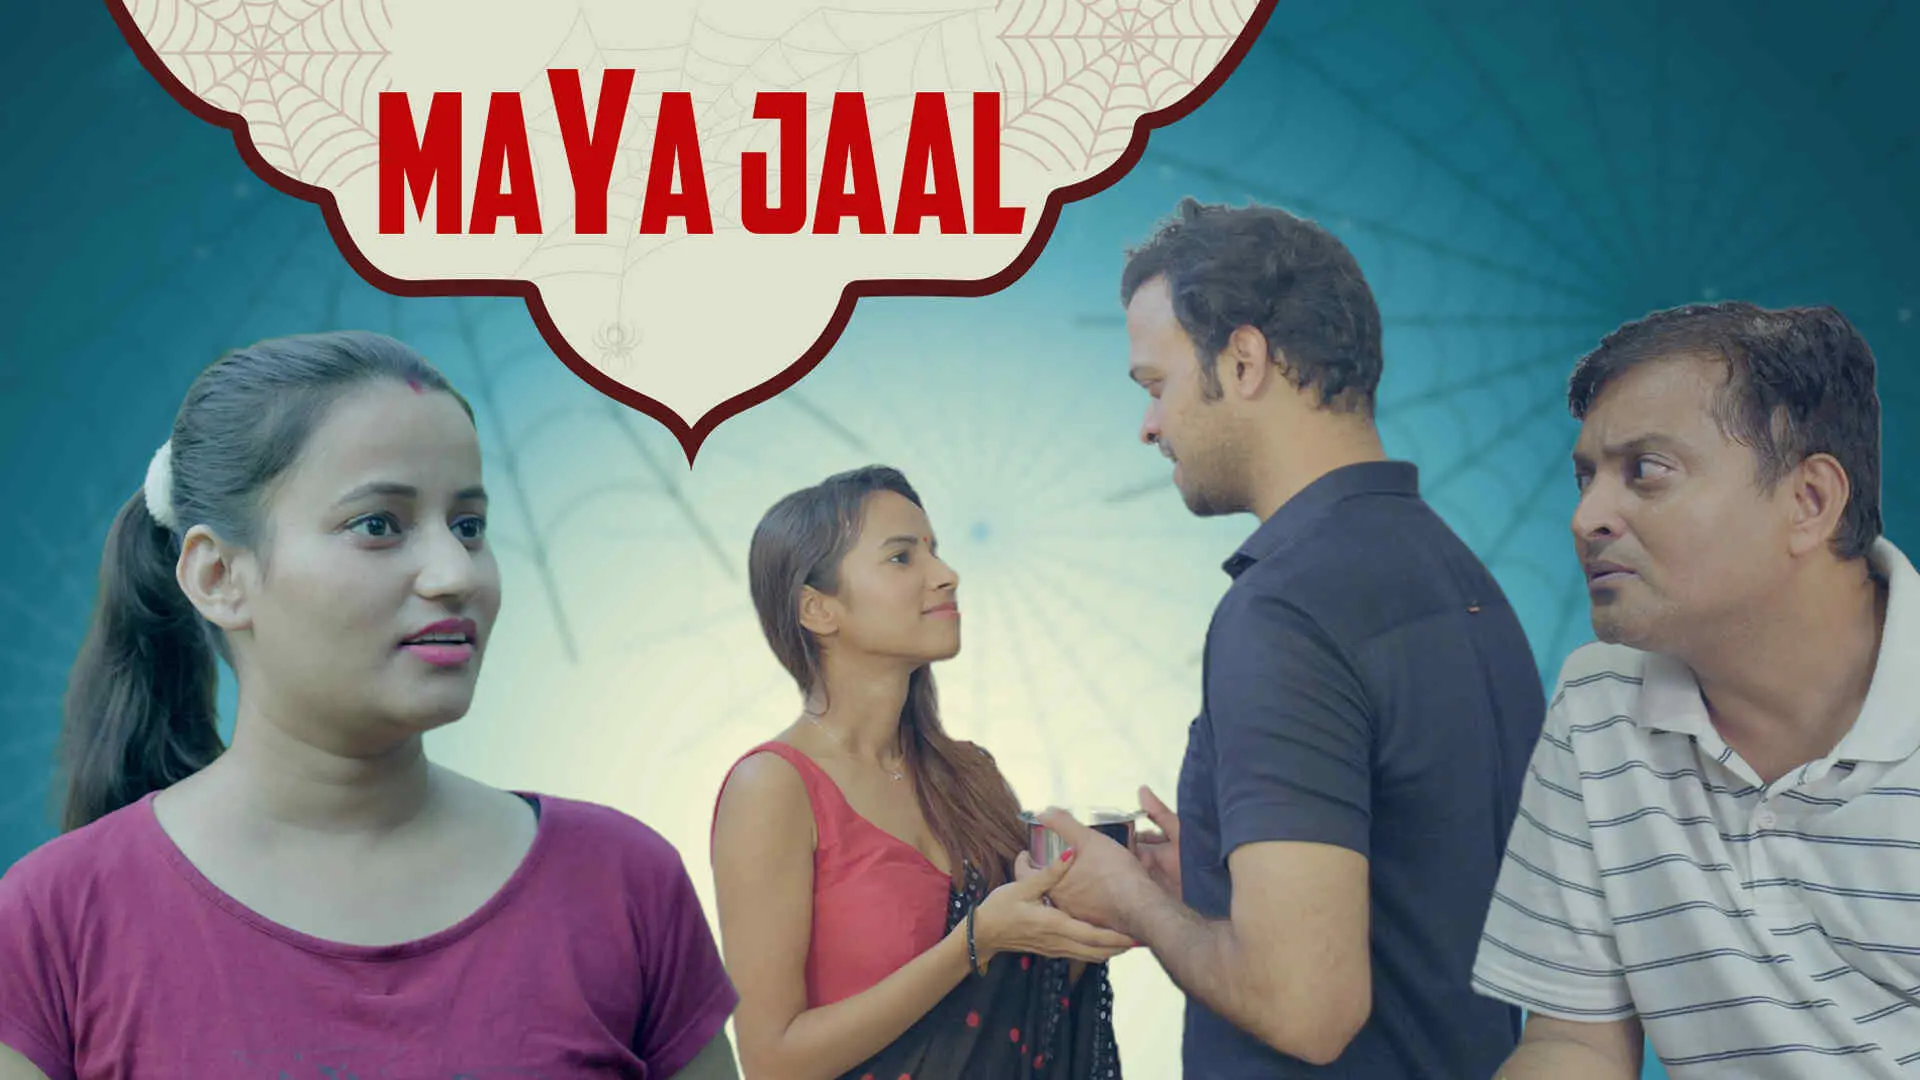 Maya Jaal